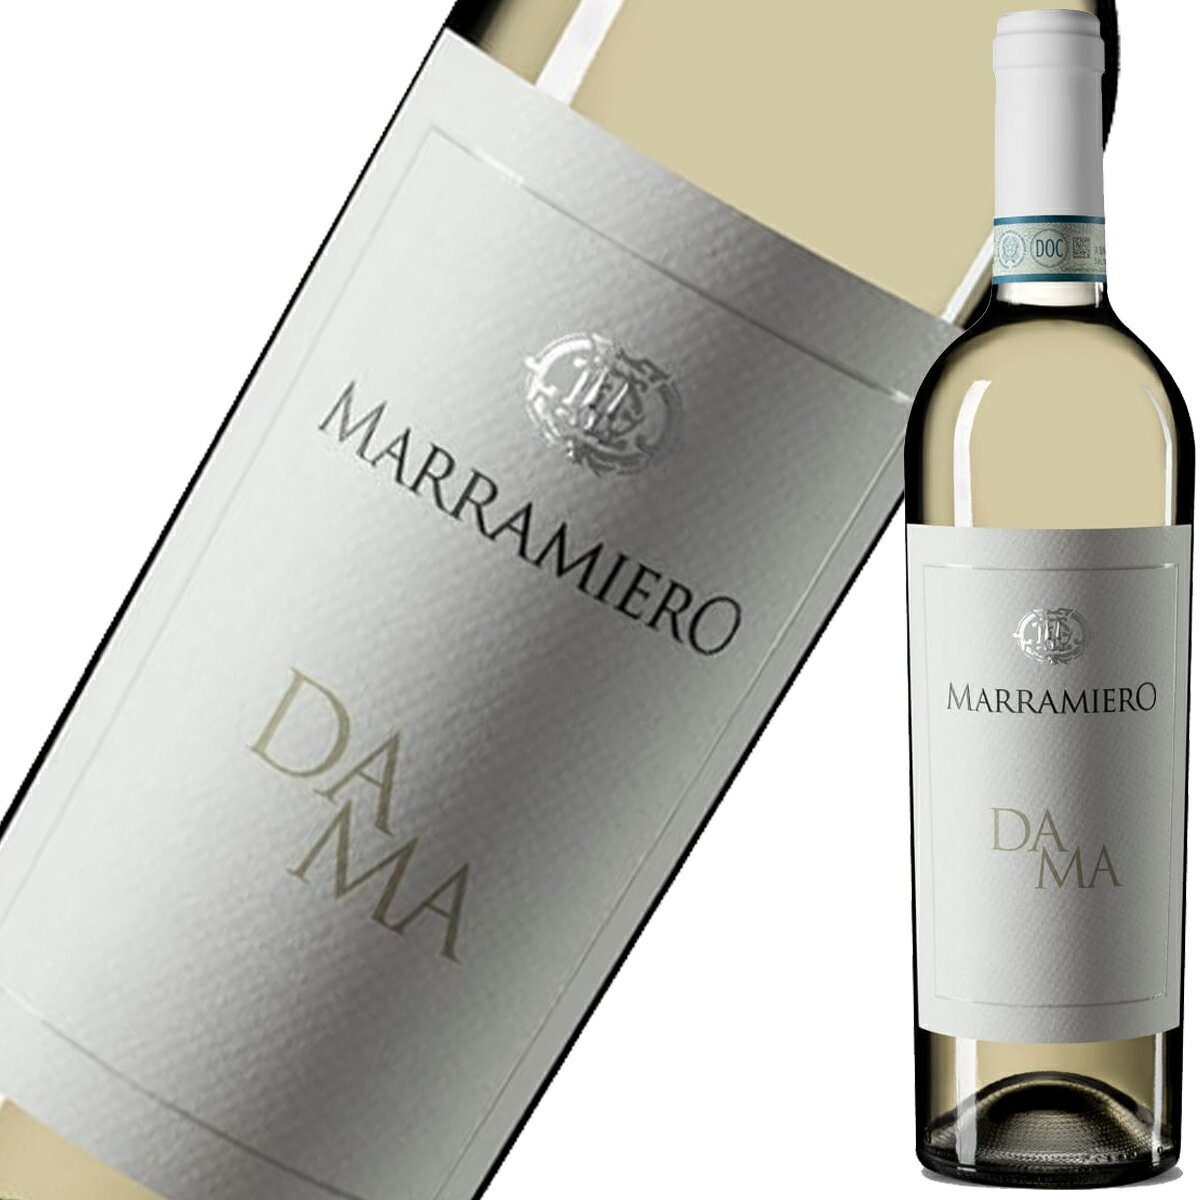 ダーマ・トレビアーノ・ダブルッツォ マラミエーロ 750ml 辛口 イタリア 白ワイン 家飲み 宅飲み wine wain DAMA TREBBIANO D'ABRUZZO MARRAMIERO プレゼント ギフト 父の日